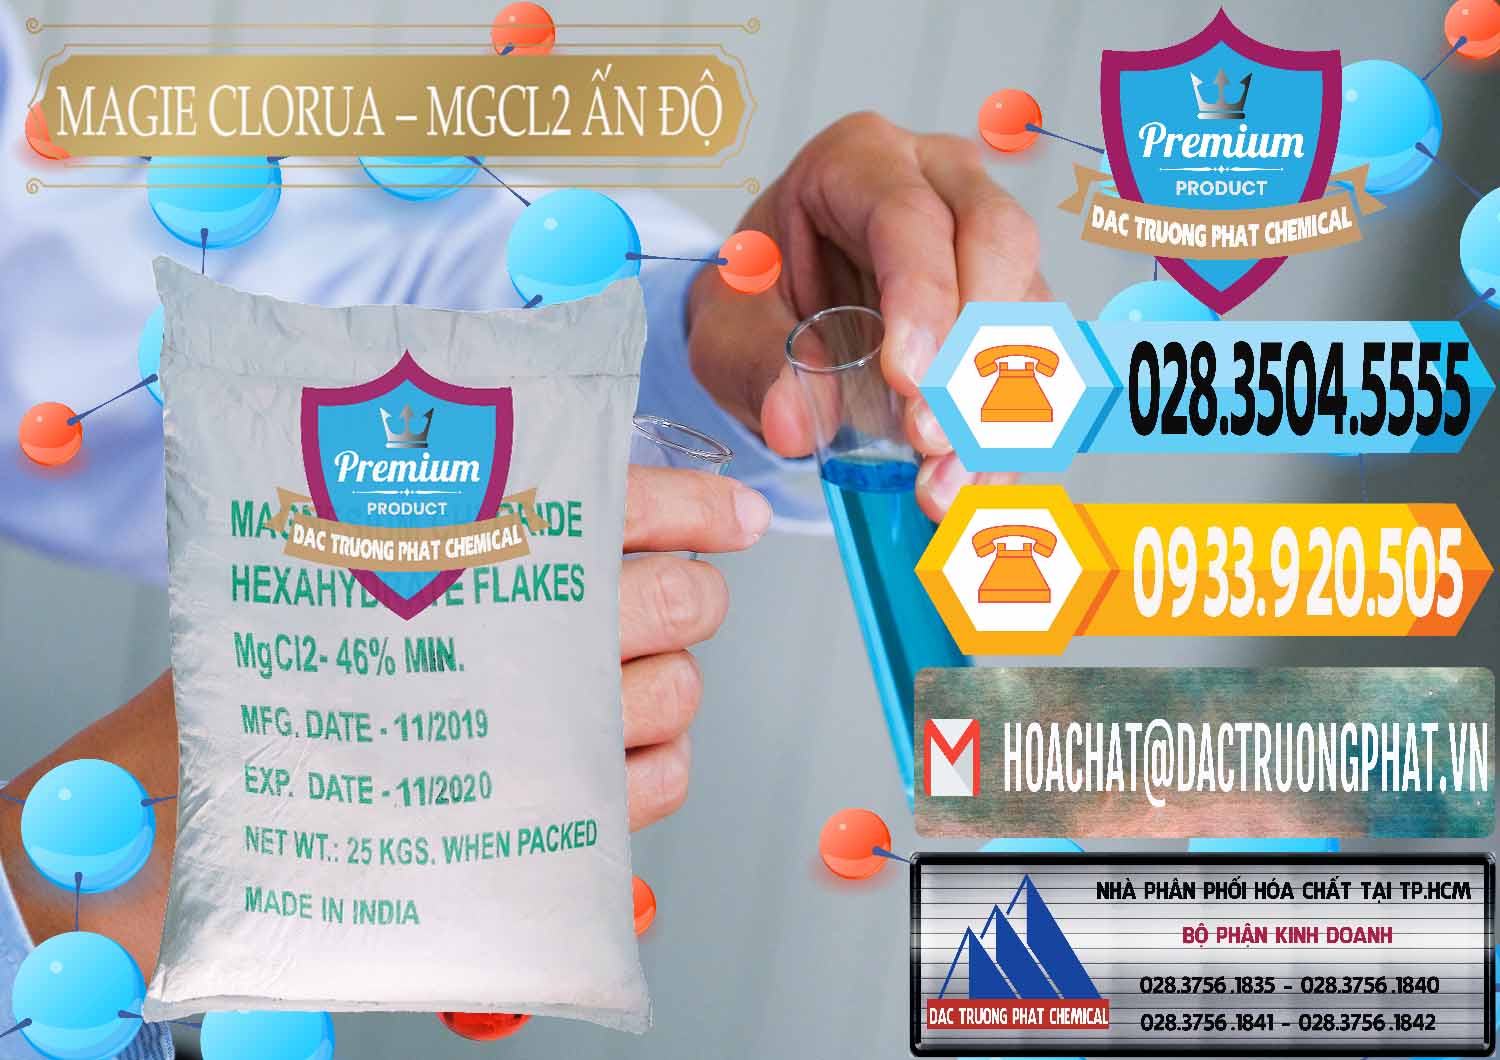 Chuyên bán và cung cấp Magie Clorua – MGCL2 46% Dạng Vảy Ấn Độ India - 0092 - Nhà cung cấp ( bán ) hóa chất tại TP.HCM - hoachattayrua.net